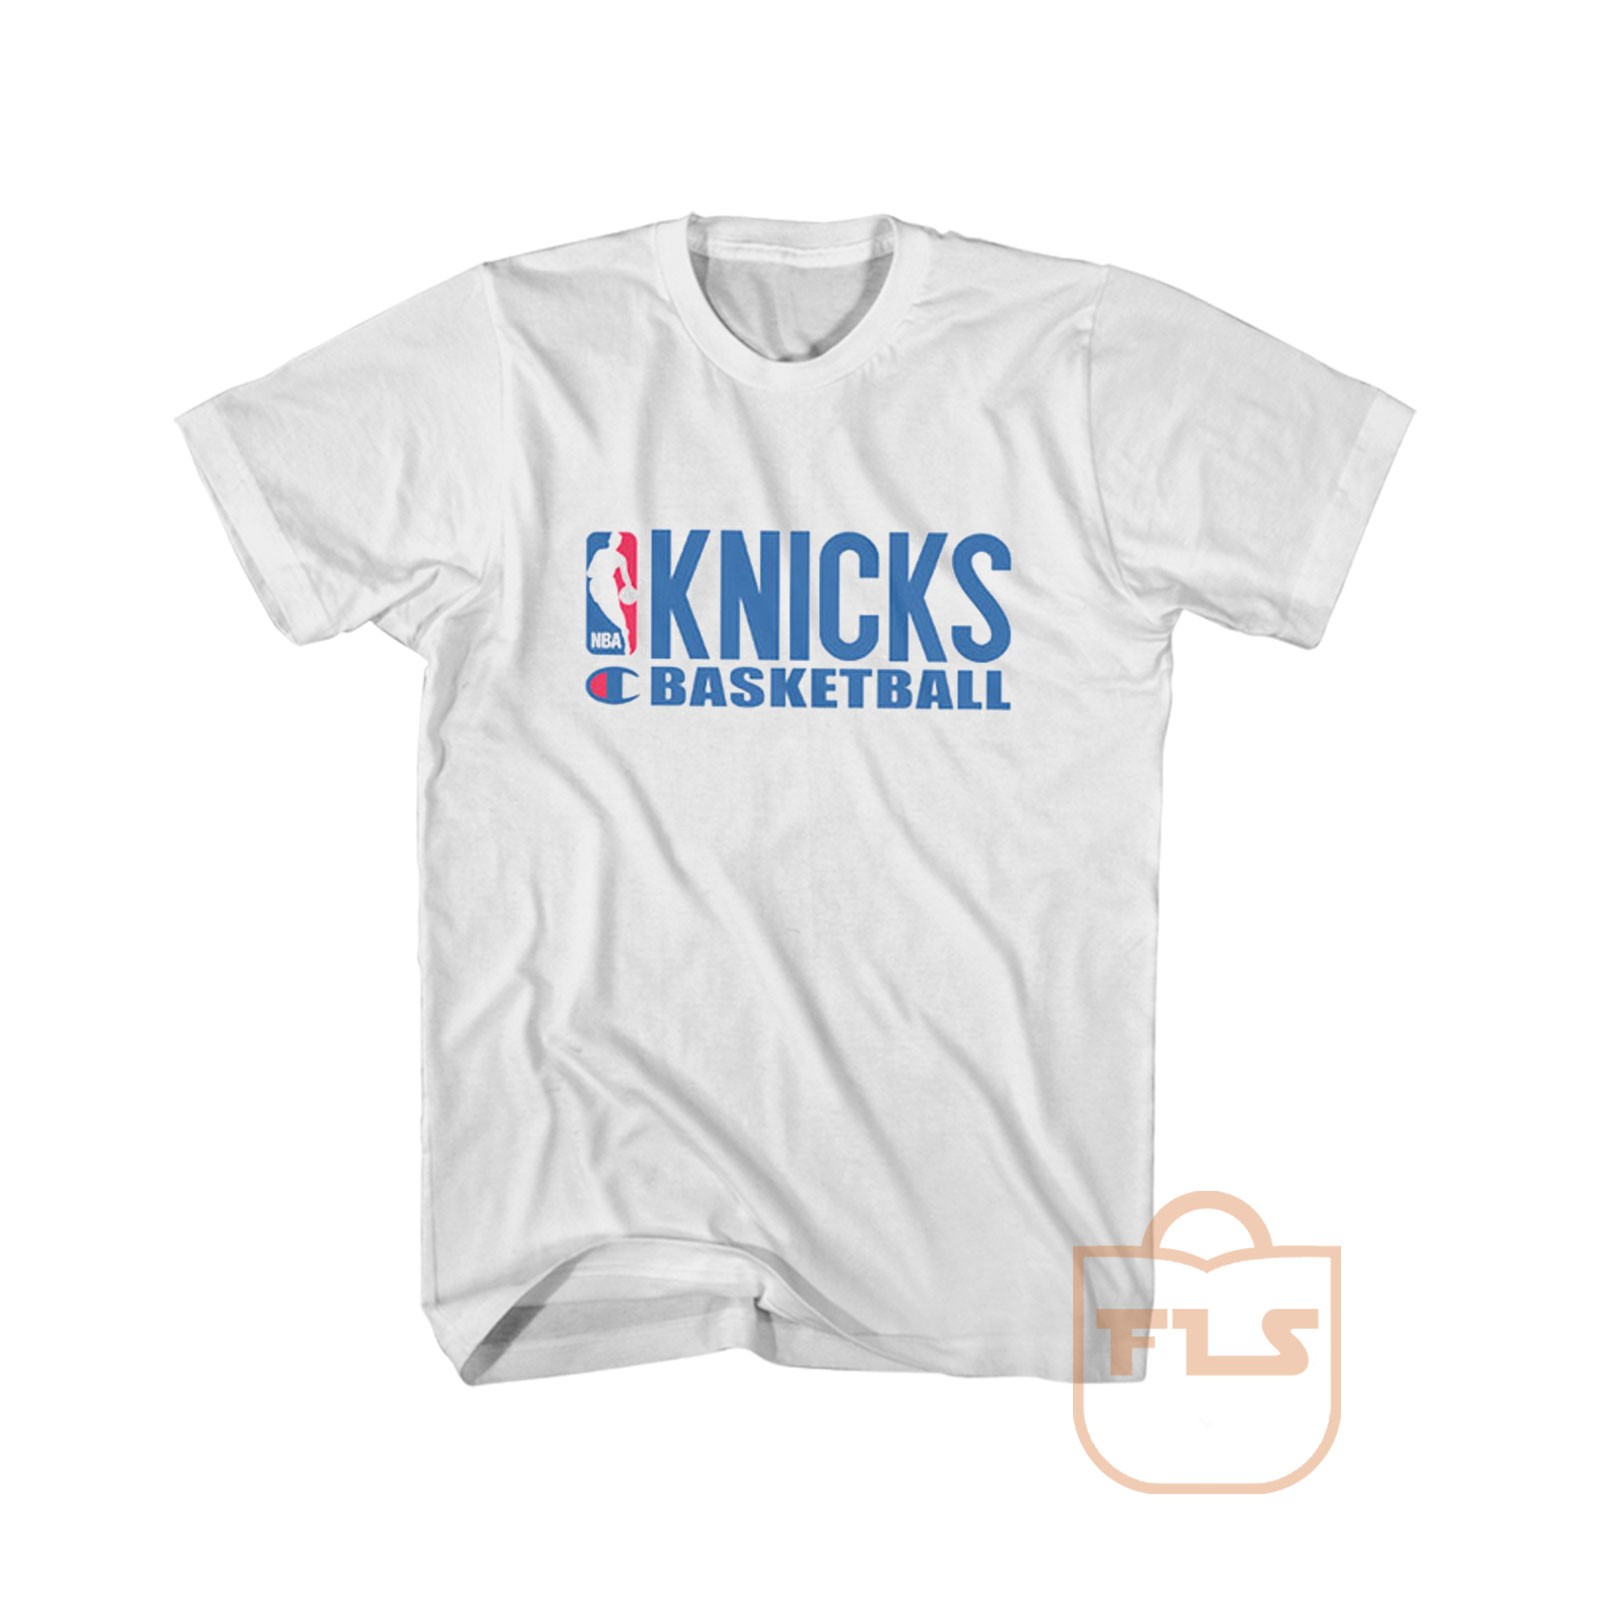 Knicks Basketball Champion Cheap 